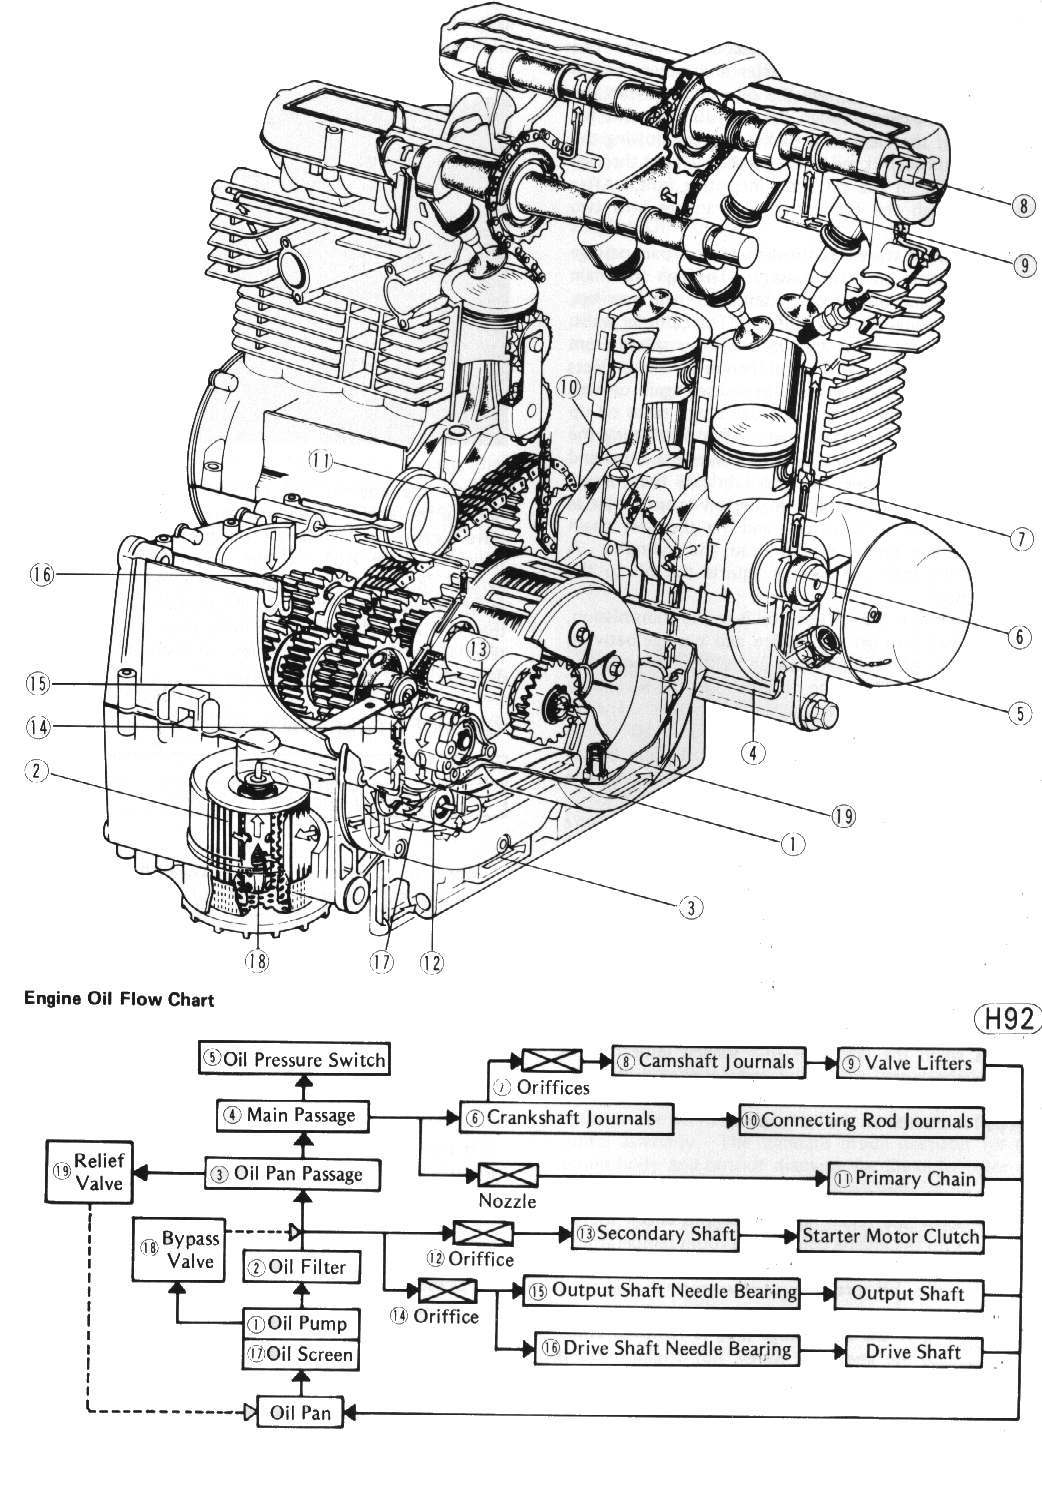 deutz bf4m1011f engine breakdown online